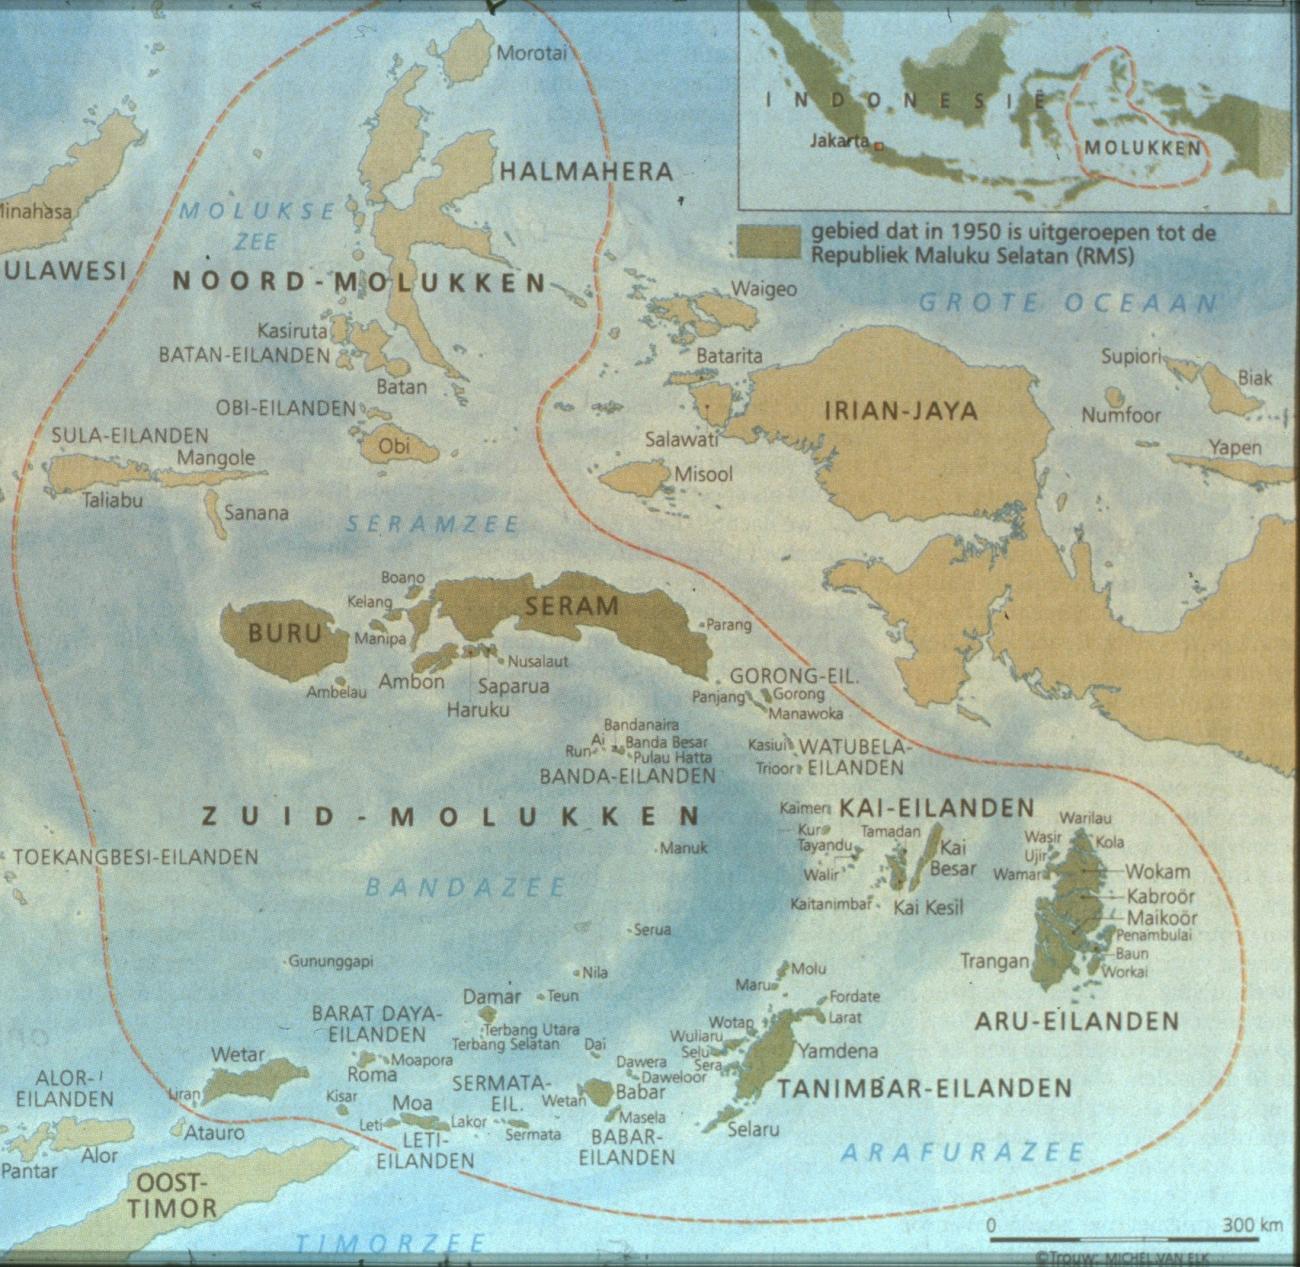 BD/67/148 - 
Overzichtskaart van de republiek der Vrije Molukken
